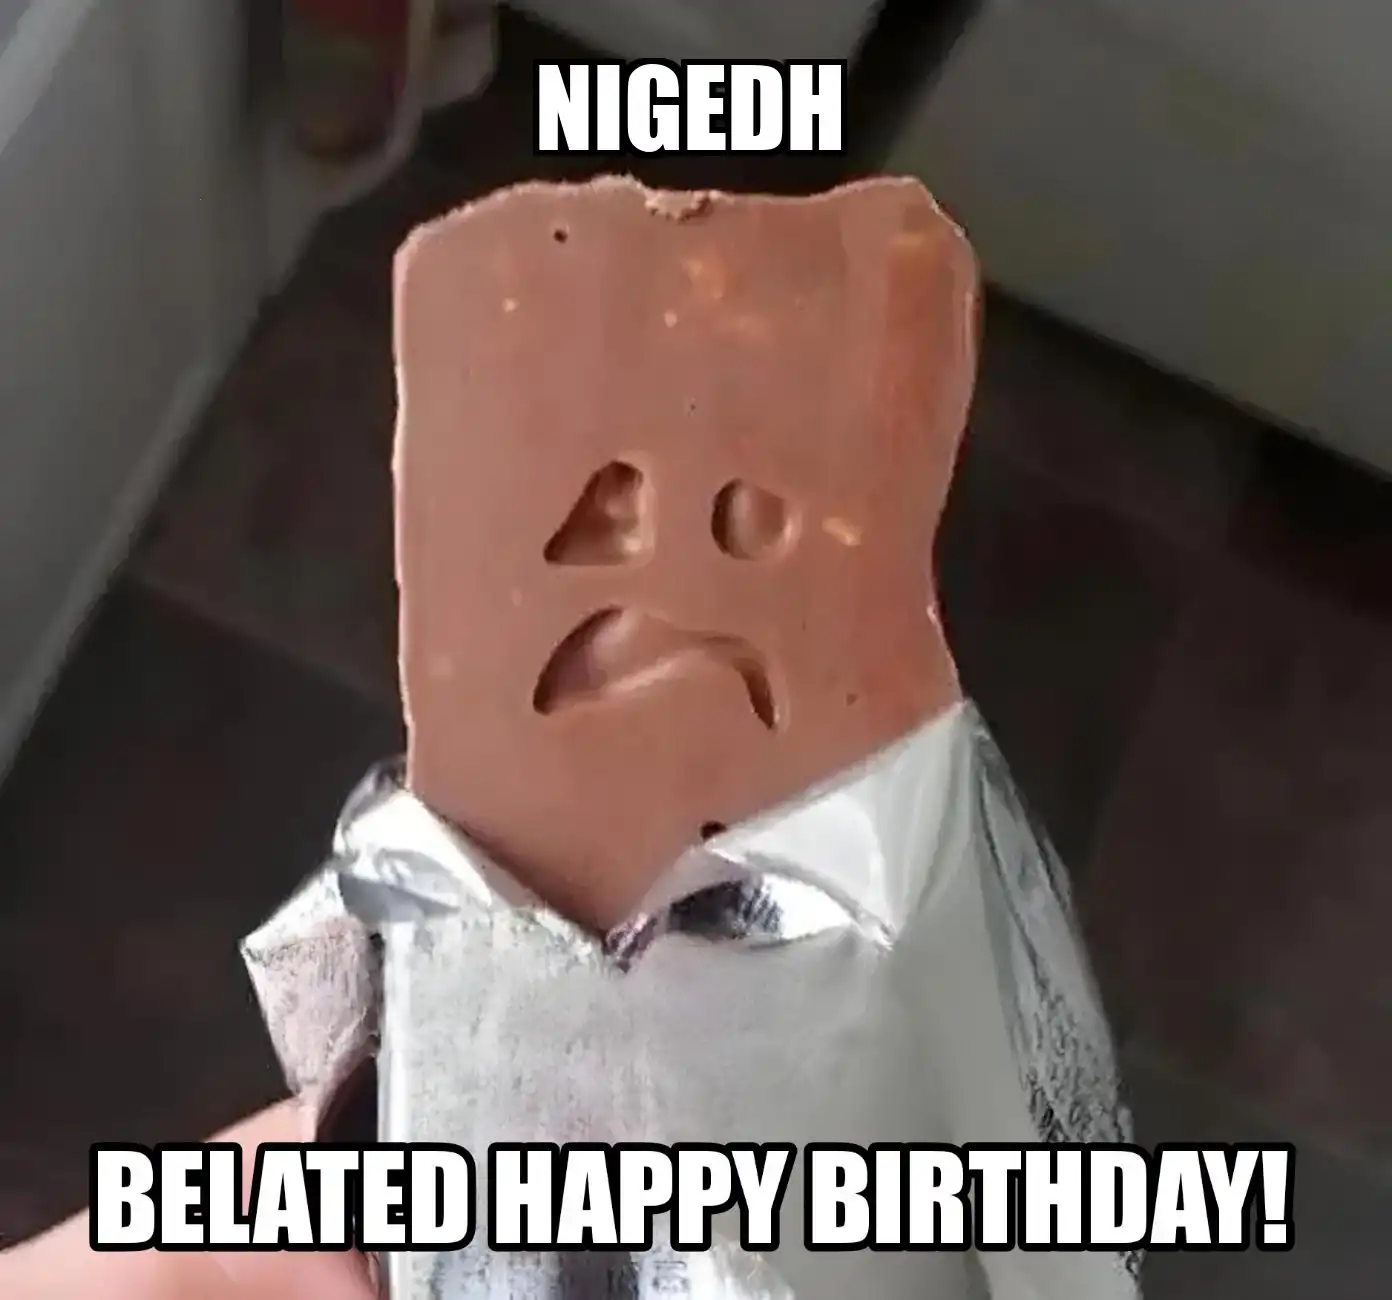 Happy Birthday Nigedh Belated Happy Birthday Meme